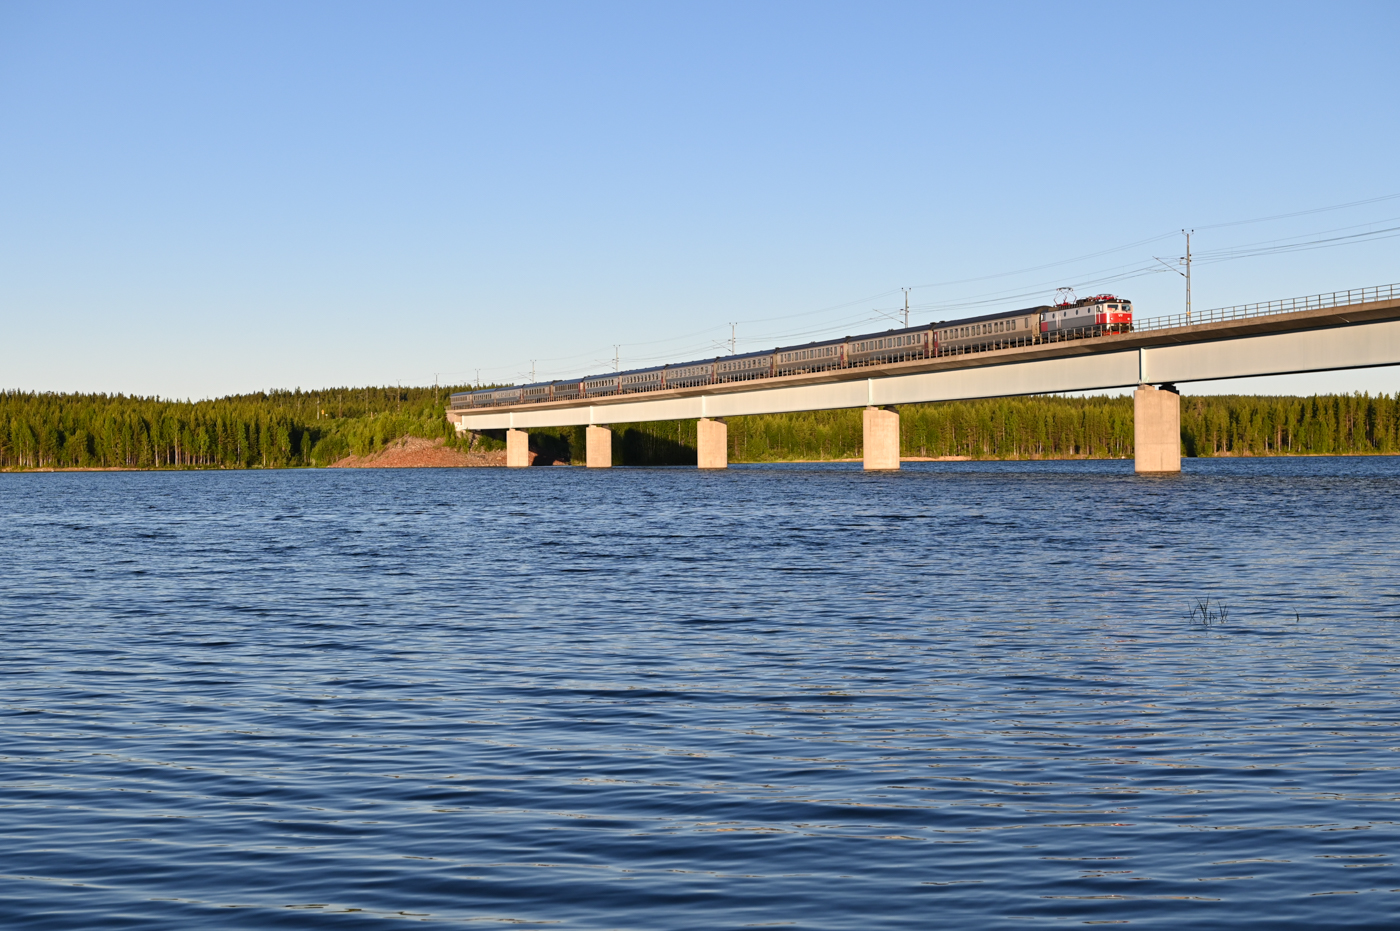 Nördlich von Vännas gibt es auf der Stambanan genom övre Norrland wieder Personenverkehr in Form von zwei täglichen Nachtzügen pro Richtung und drei täglichen Regionalzügen pro Richtung. Südlich von Jörn bei Rengård überquert die Bahn den Fluss Skellefteälven, der hier zur Stromgewinnung aufgestaut wurde. Am 22.06.2022 überquert der frühe der beiden Nachtzüge (Zug 94 von Stockholm nach Narvik und Luleå) um 4 Uhr die Brücke über den Stausee.